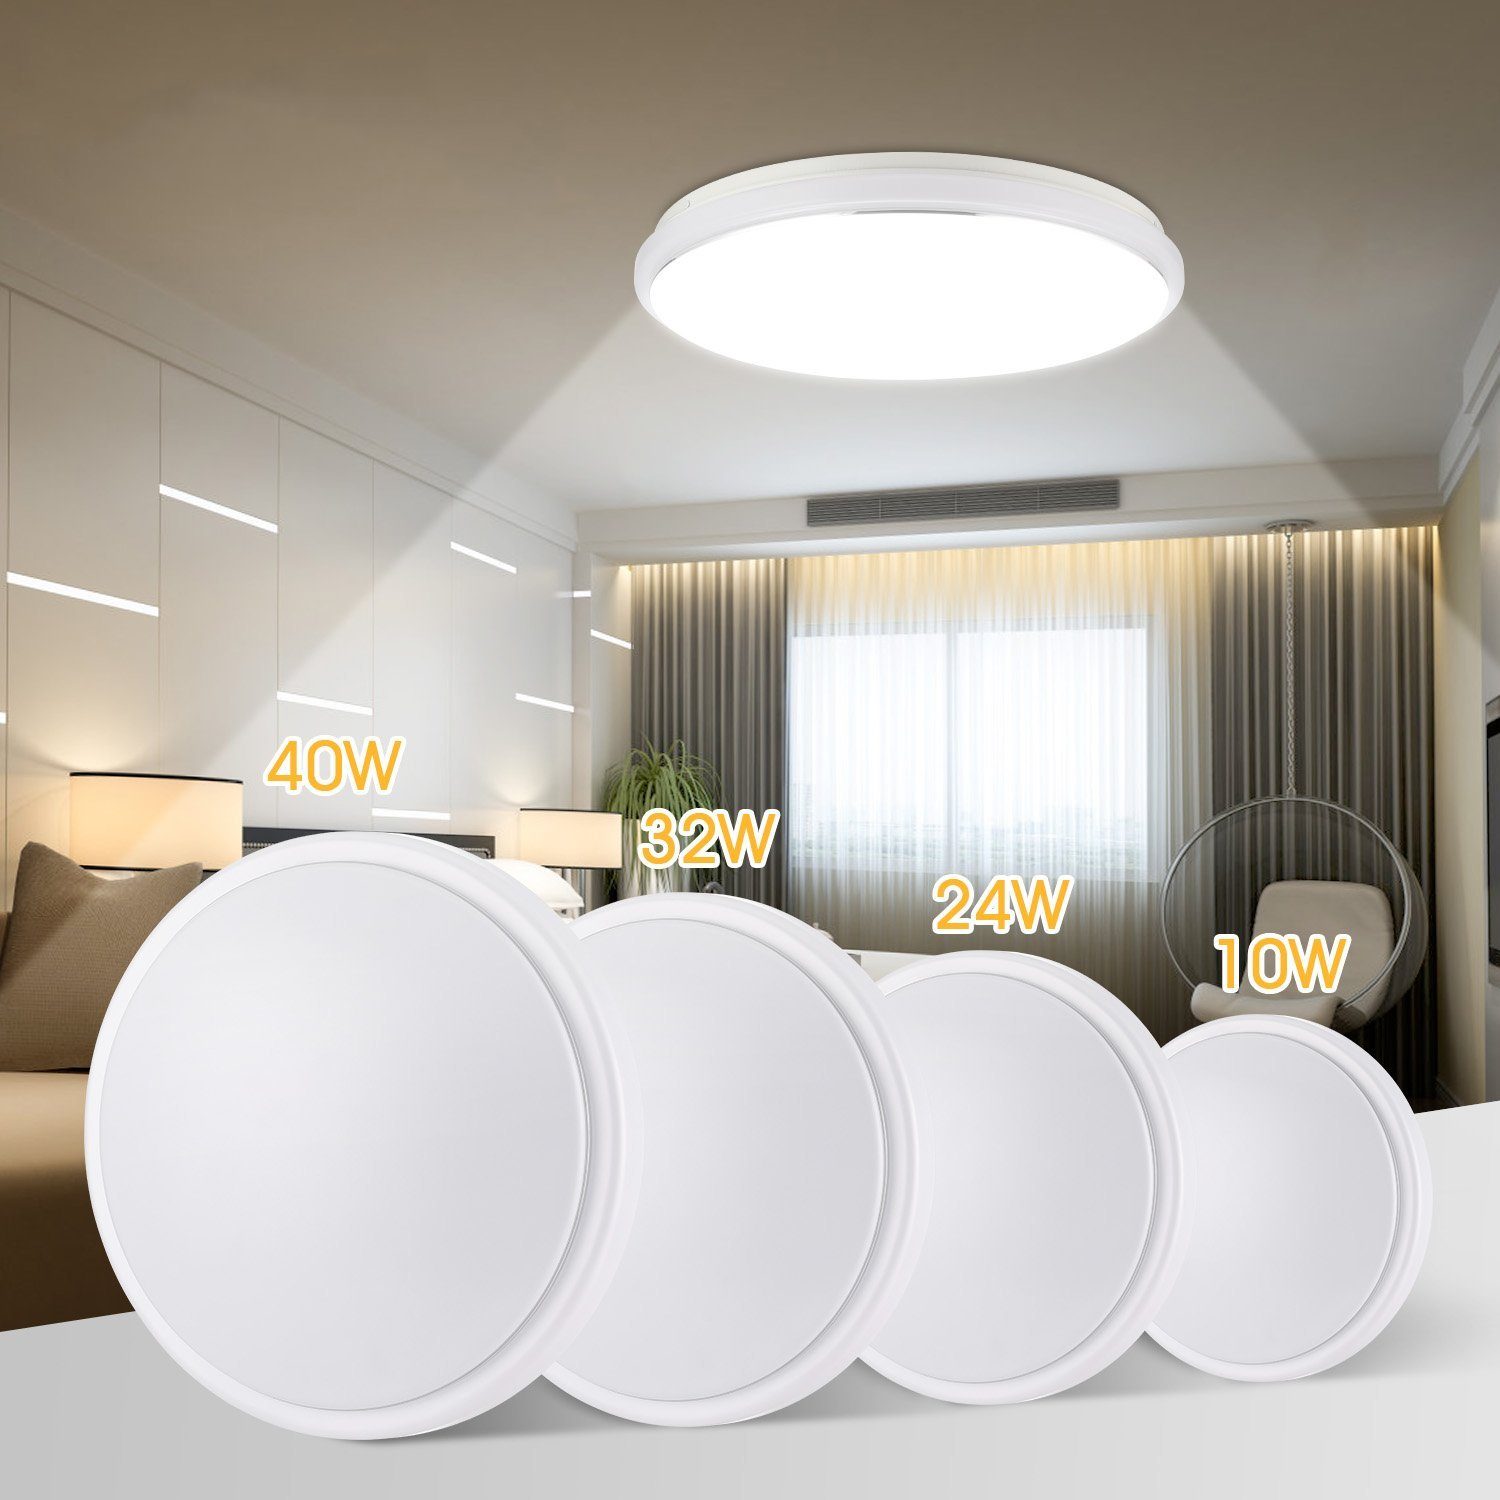 LETGOSPT Deckenleuchte LED Deckenleuchte Flach Rund Deckenlampe Modern Weiß 6000K Led Lampen, LED fest integriert, Kaltweiß, IP44 Wasserdicht, für Badezimmer Schlafzimmer Wohnzimmer Küche Balkon 24W (26 x 26 x 7,5 cm)